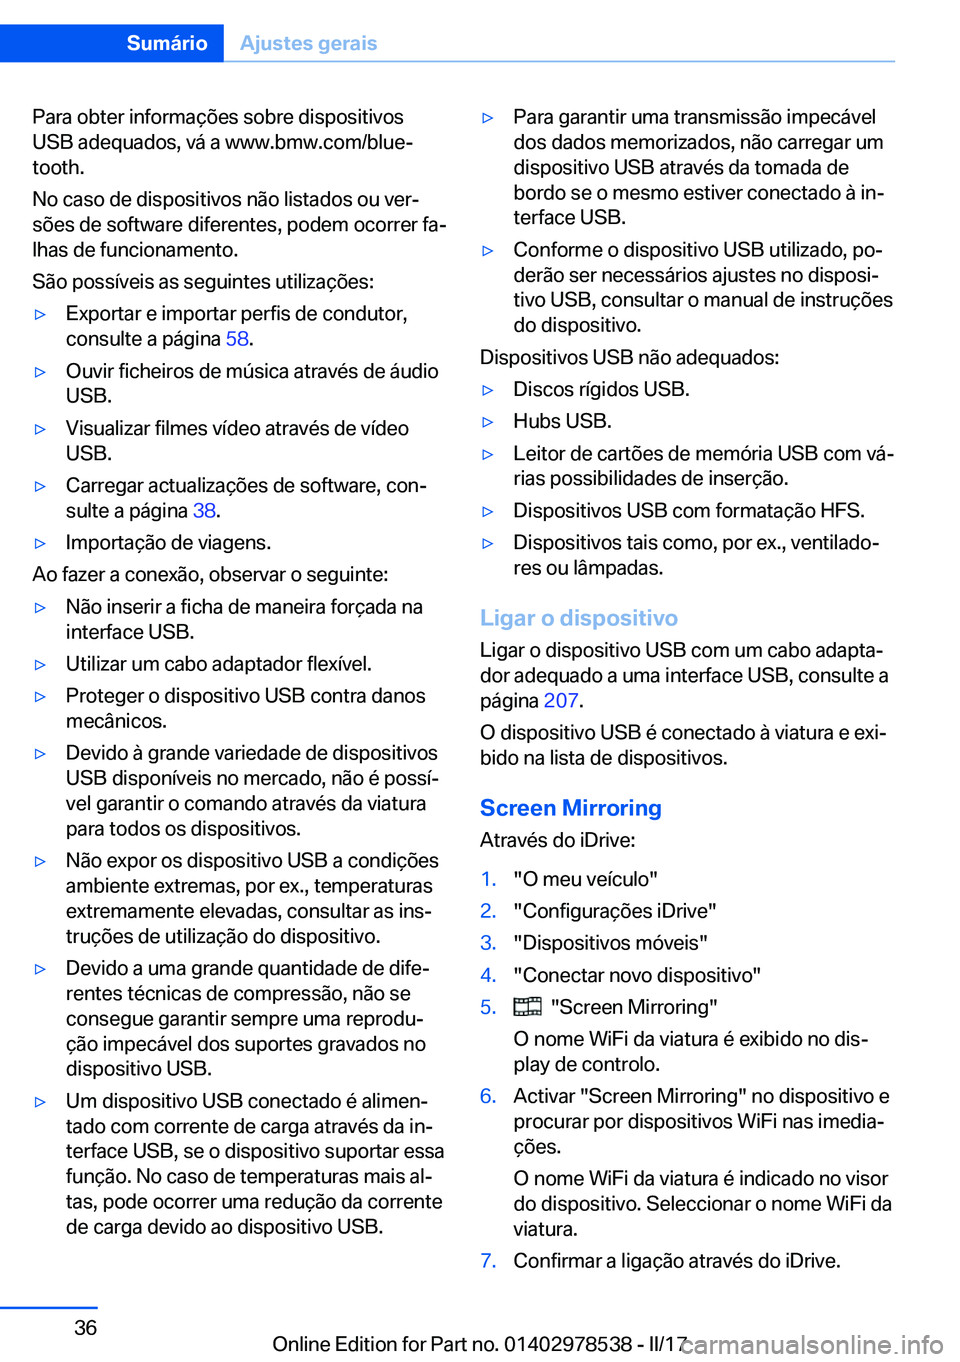 BMW X6 M 2017  Manual do condutor (in Portuguese) �P�a�r�a� �o�b�t�e�r� �i�n�f�o�r�m�a�ç�õ�e�s� �s�o�b�r�e� �d�i�s�p�o�s�i�t�i�v�o�s�U�S�B� �a�d�e�q�u�a�d�o�s�,� �v�á� �a� �w�w�w�.�b�m�w�.�c�o�m�/�b�l�u�eª
�t�o�o�t�h�.
�N�o� �c�a�s�o� �d�e� �d�i